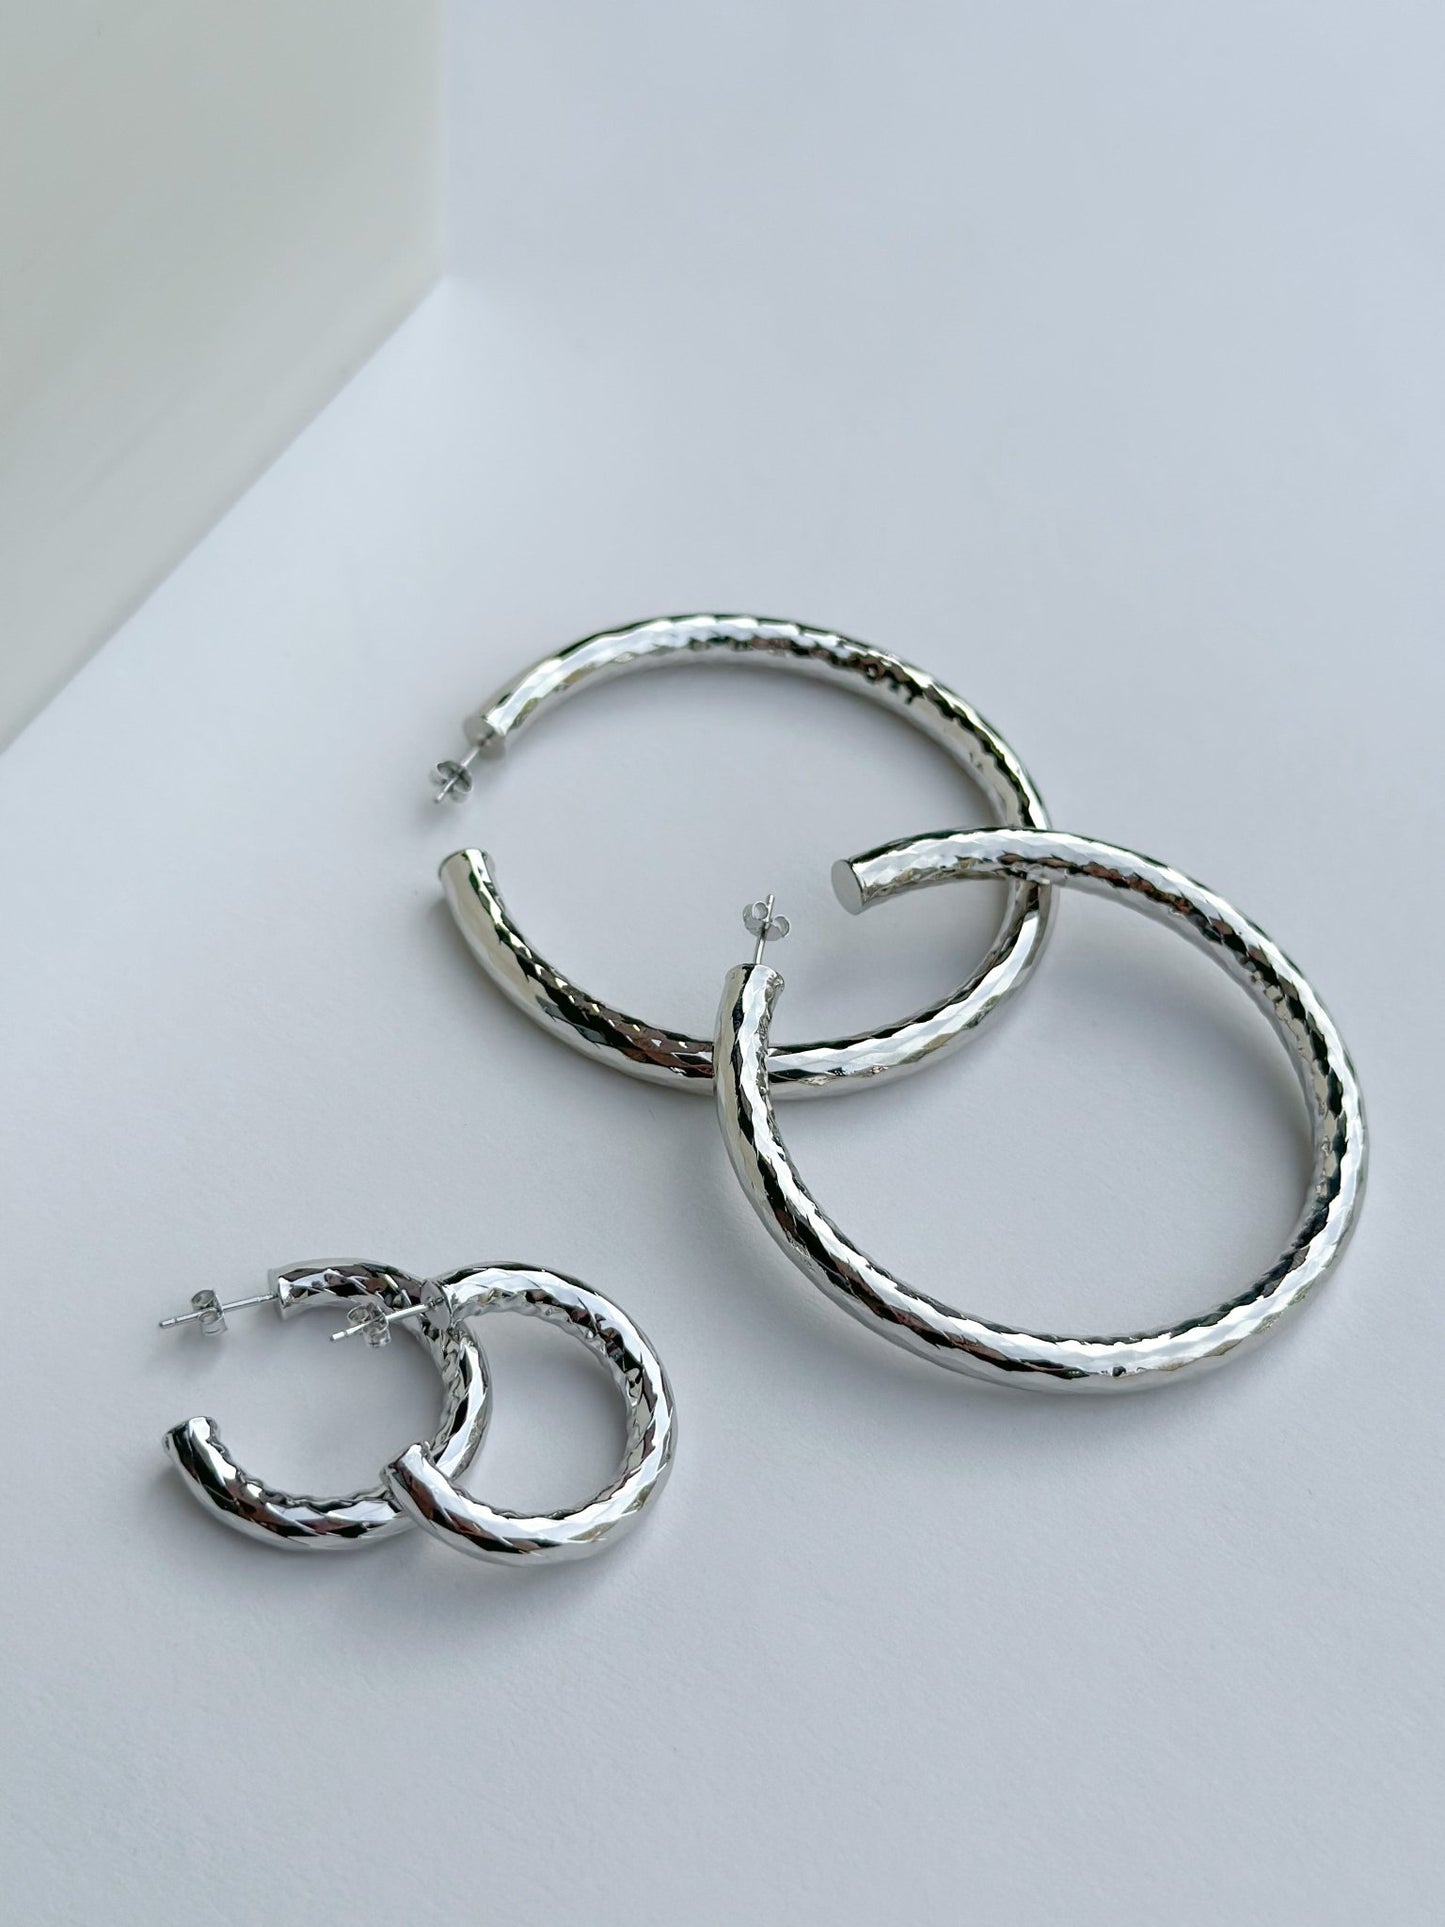 1" Wavelet Hoops in Silver - Machete Jewelry